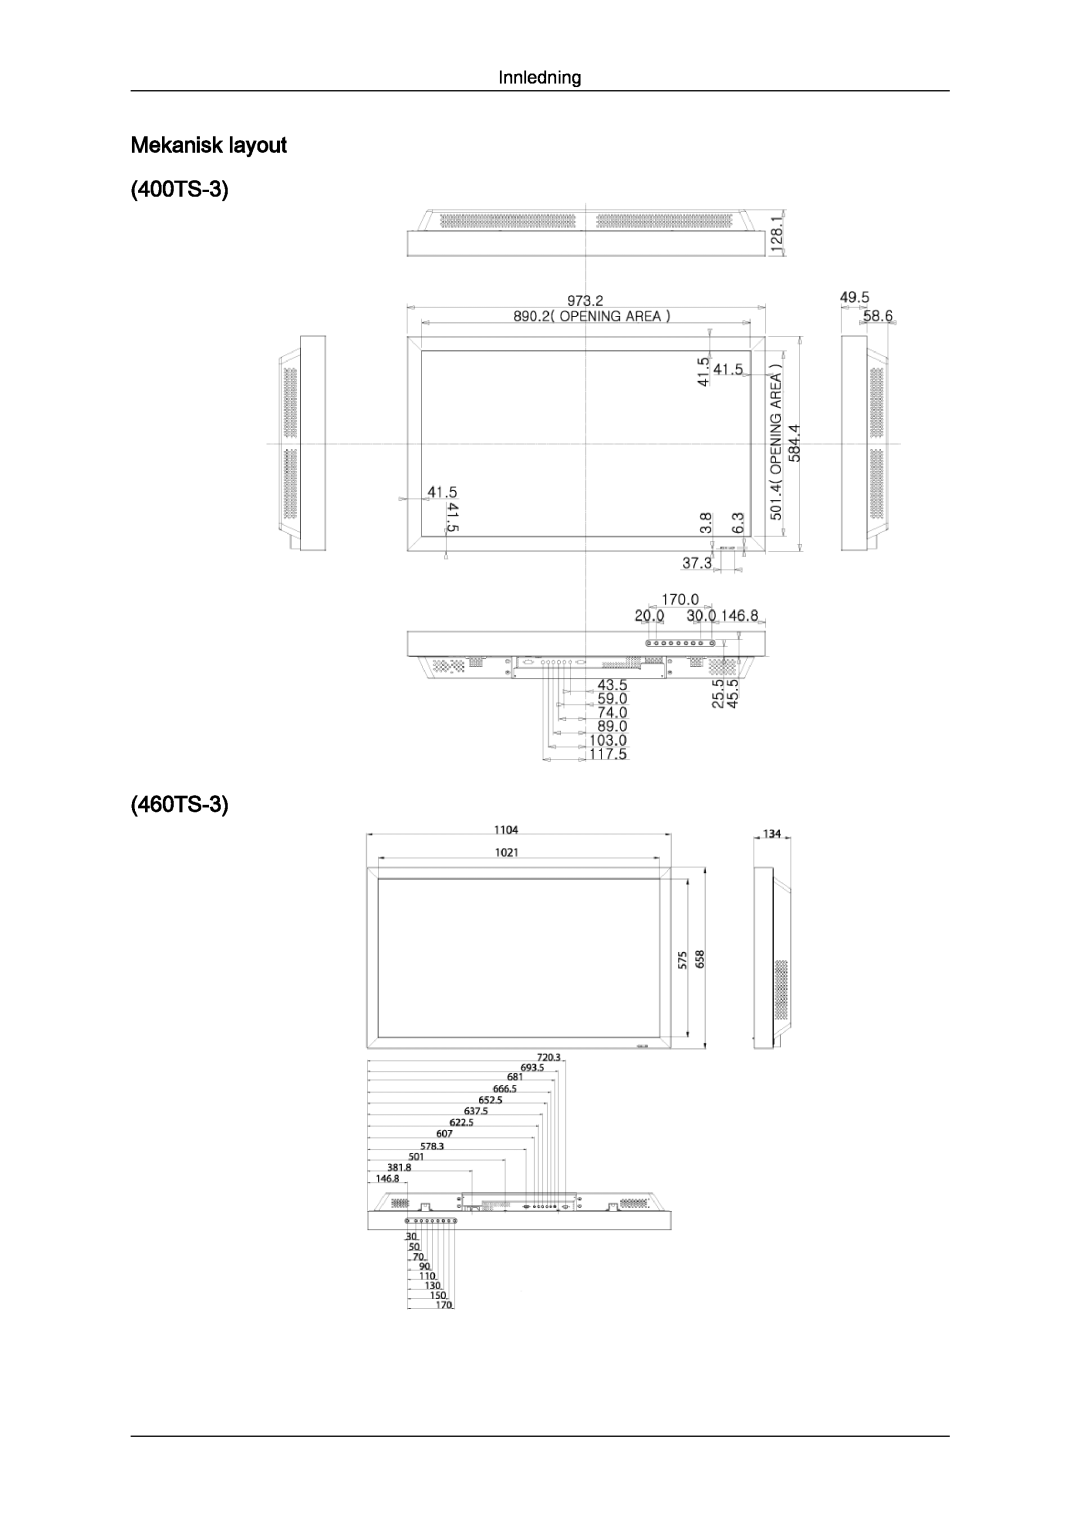 Samsung LH46CRPMBD/EN, LH46CRPMBC/EN, LH40CRPMBD/EN, LH40CRPMBC/EN manual 460TS-3, Mekanisk layout 400TS-3 